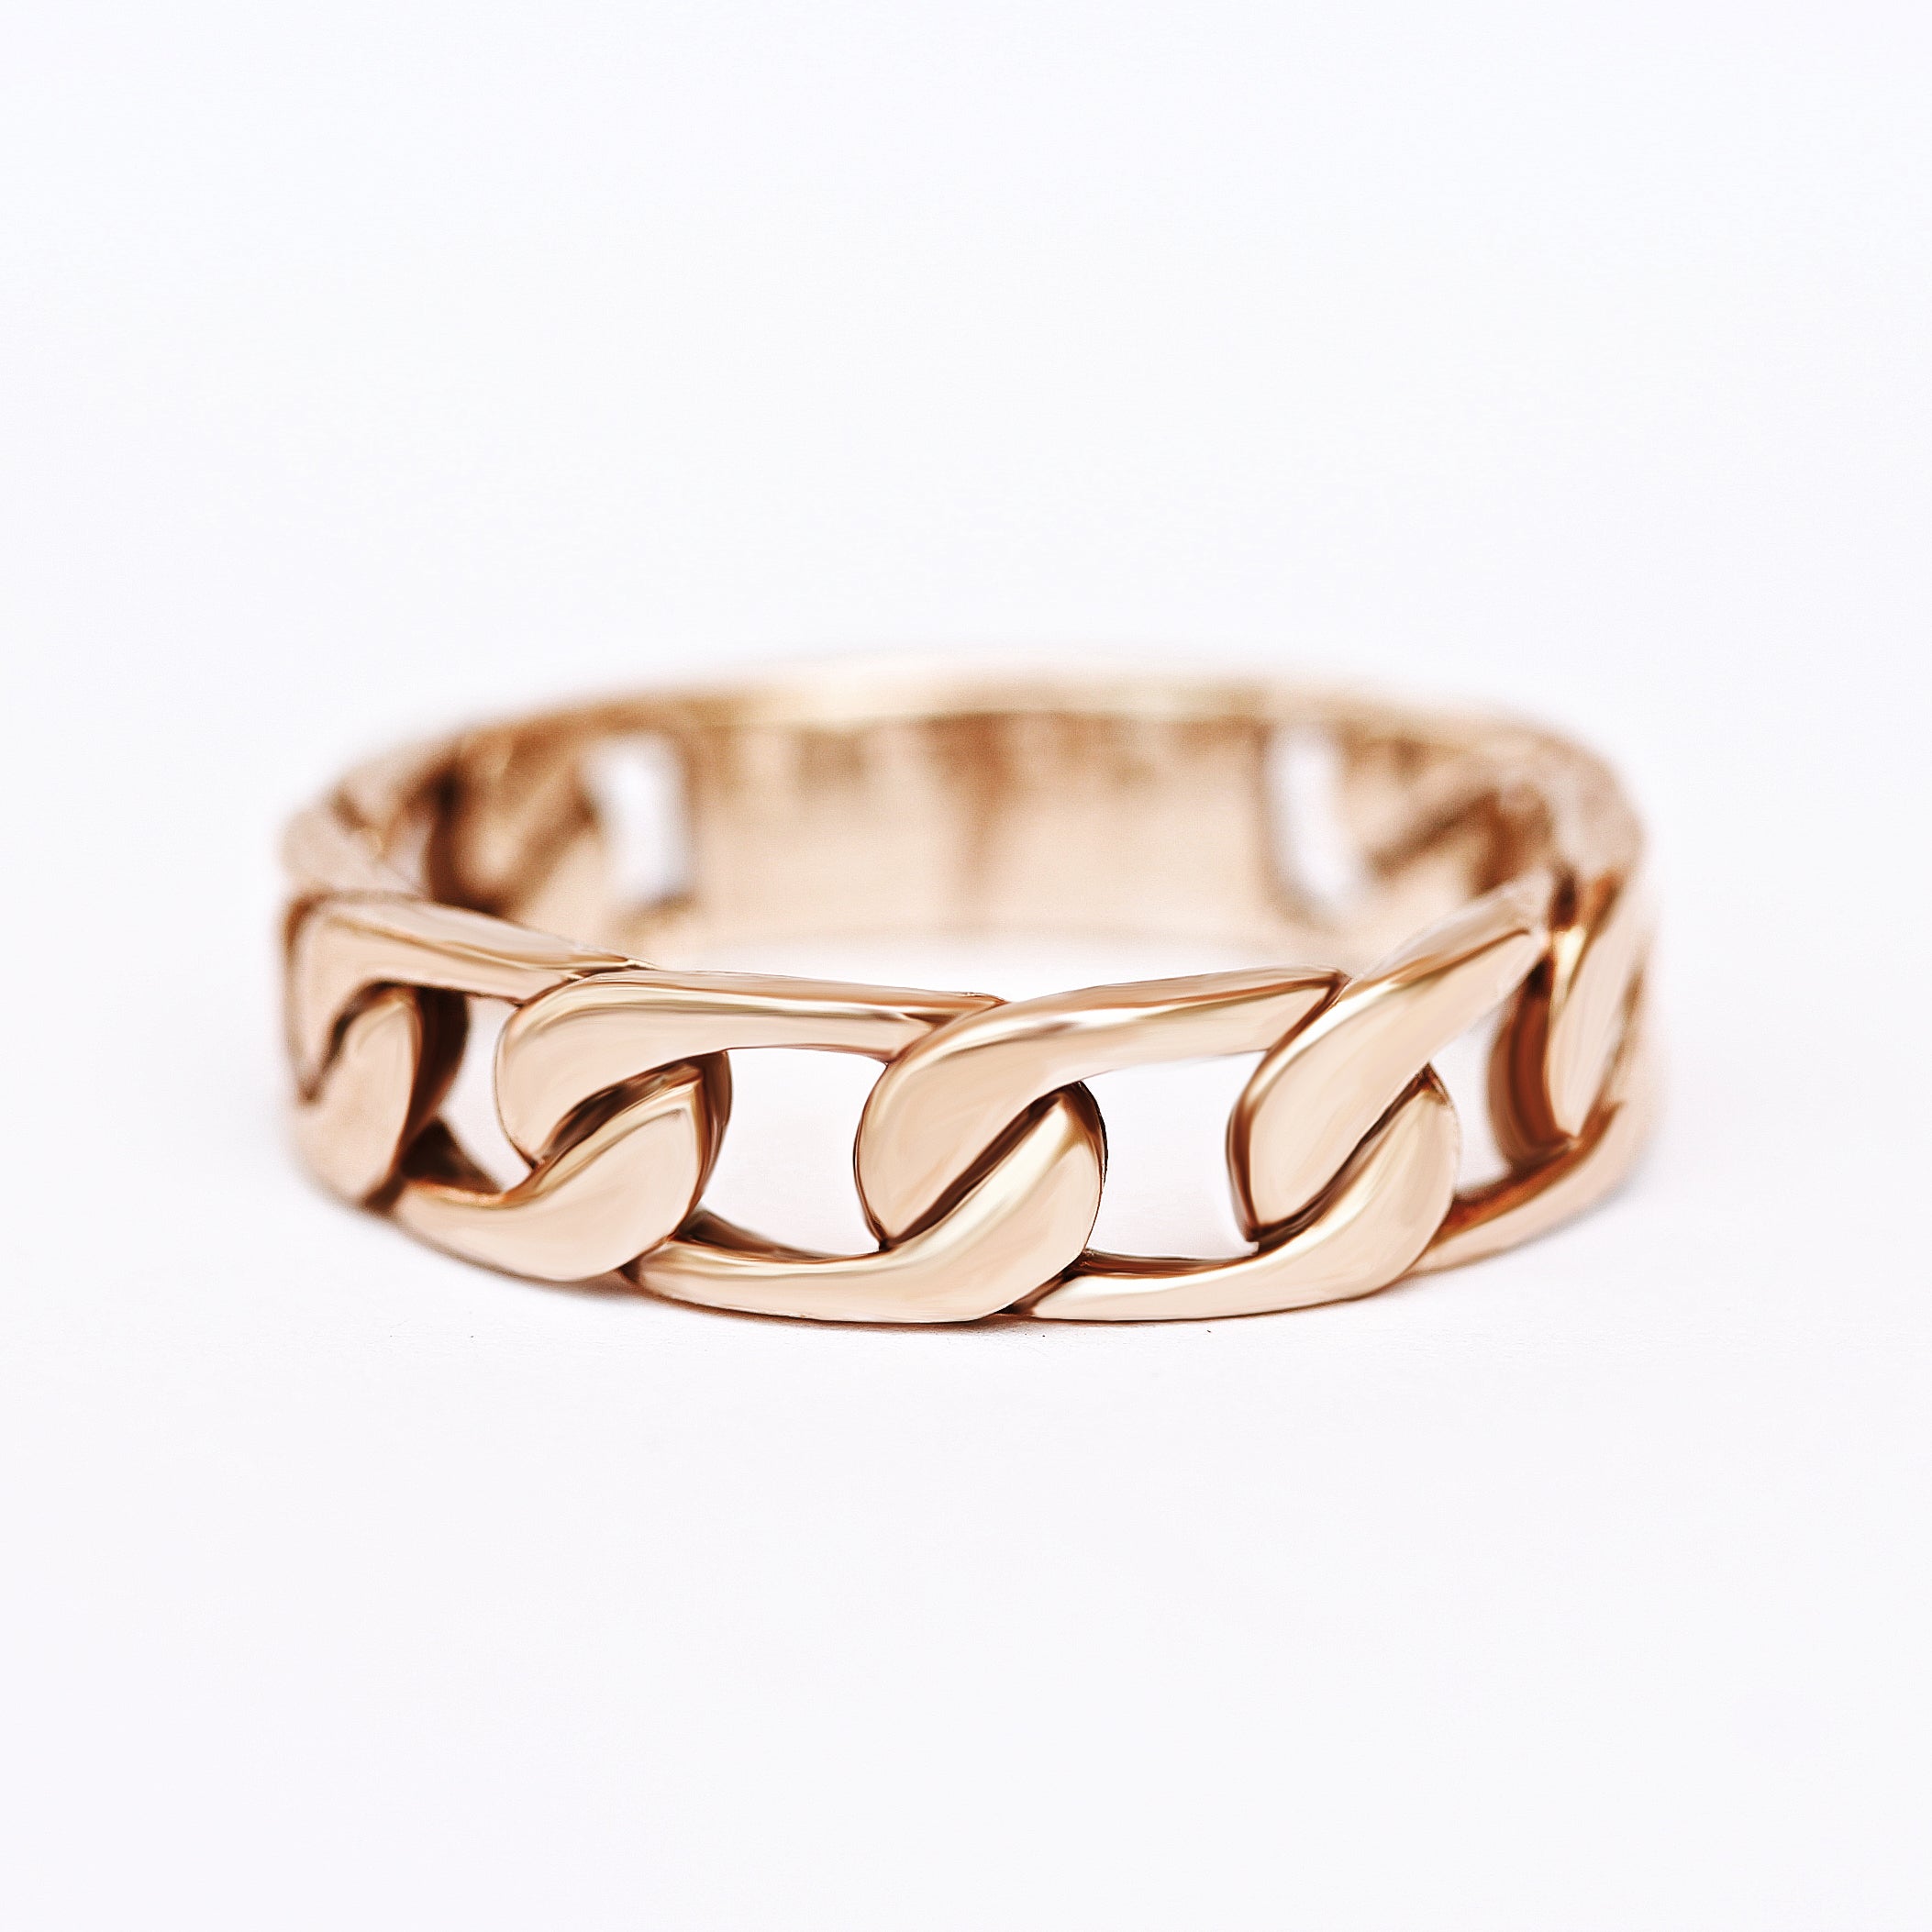 Gold flat chain wedding ring - sillyshinydiamonds